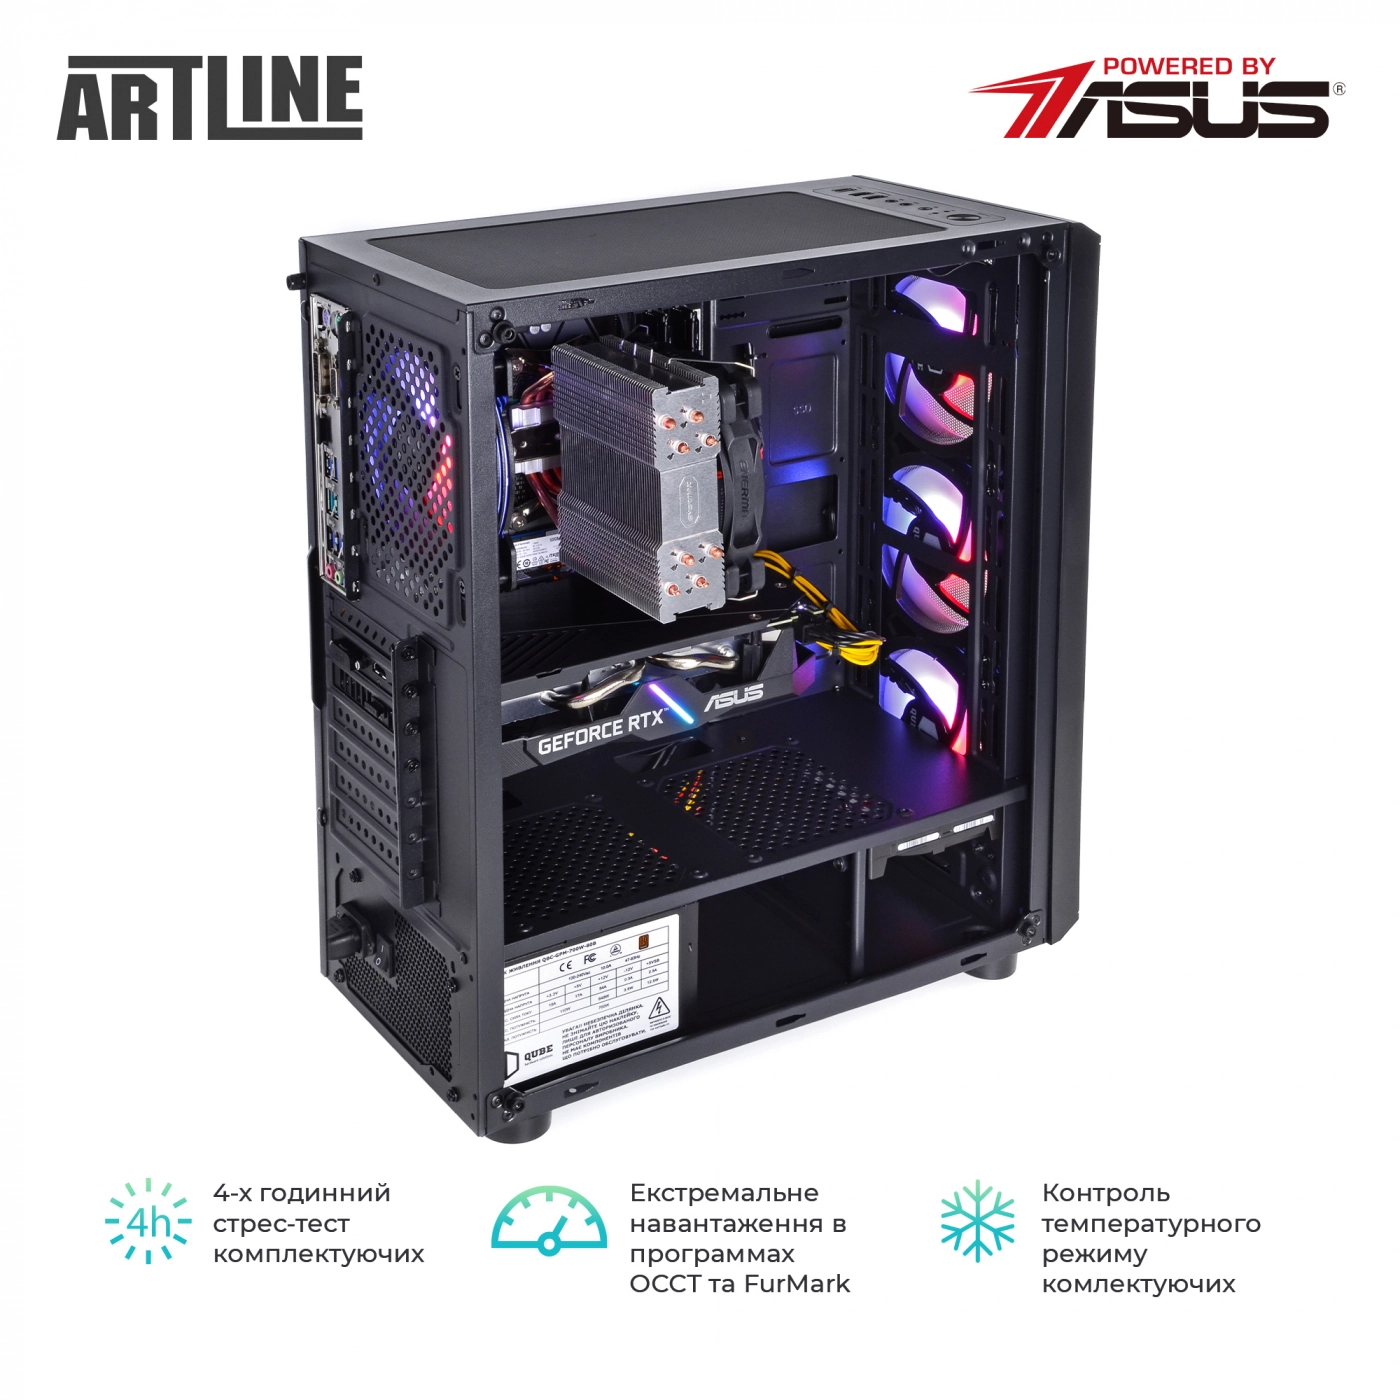 Купить Компьютер ARTLINE Gaming X77v38 - фото 10